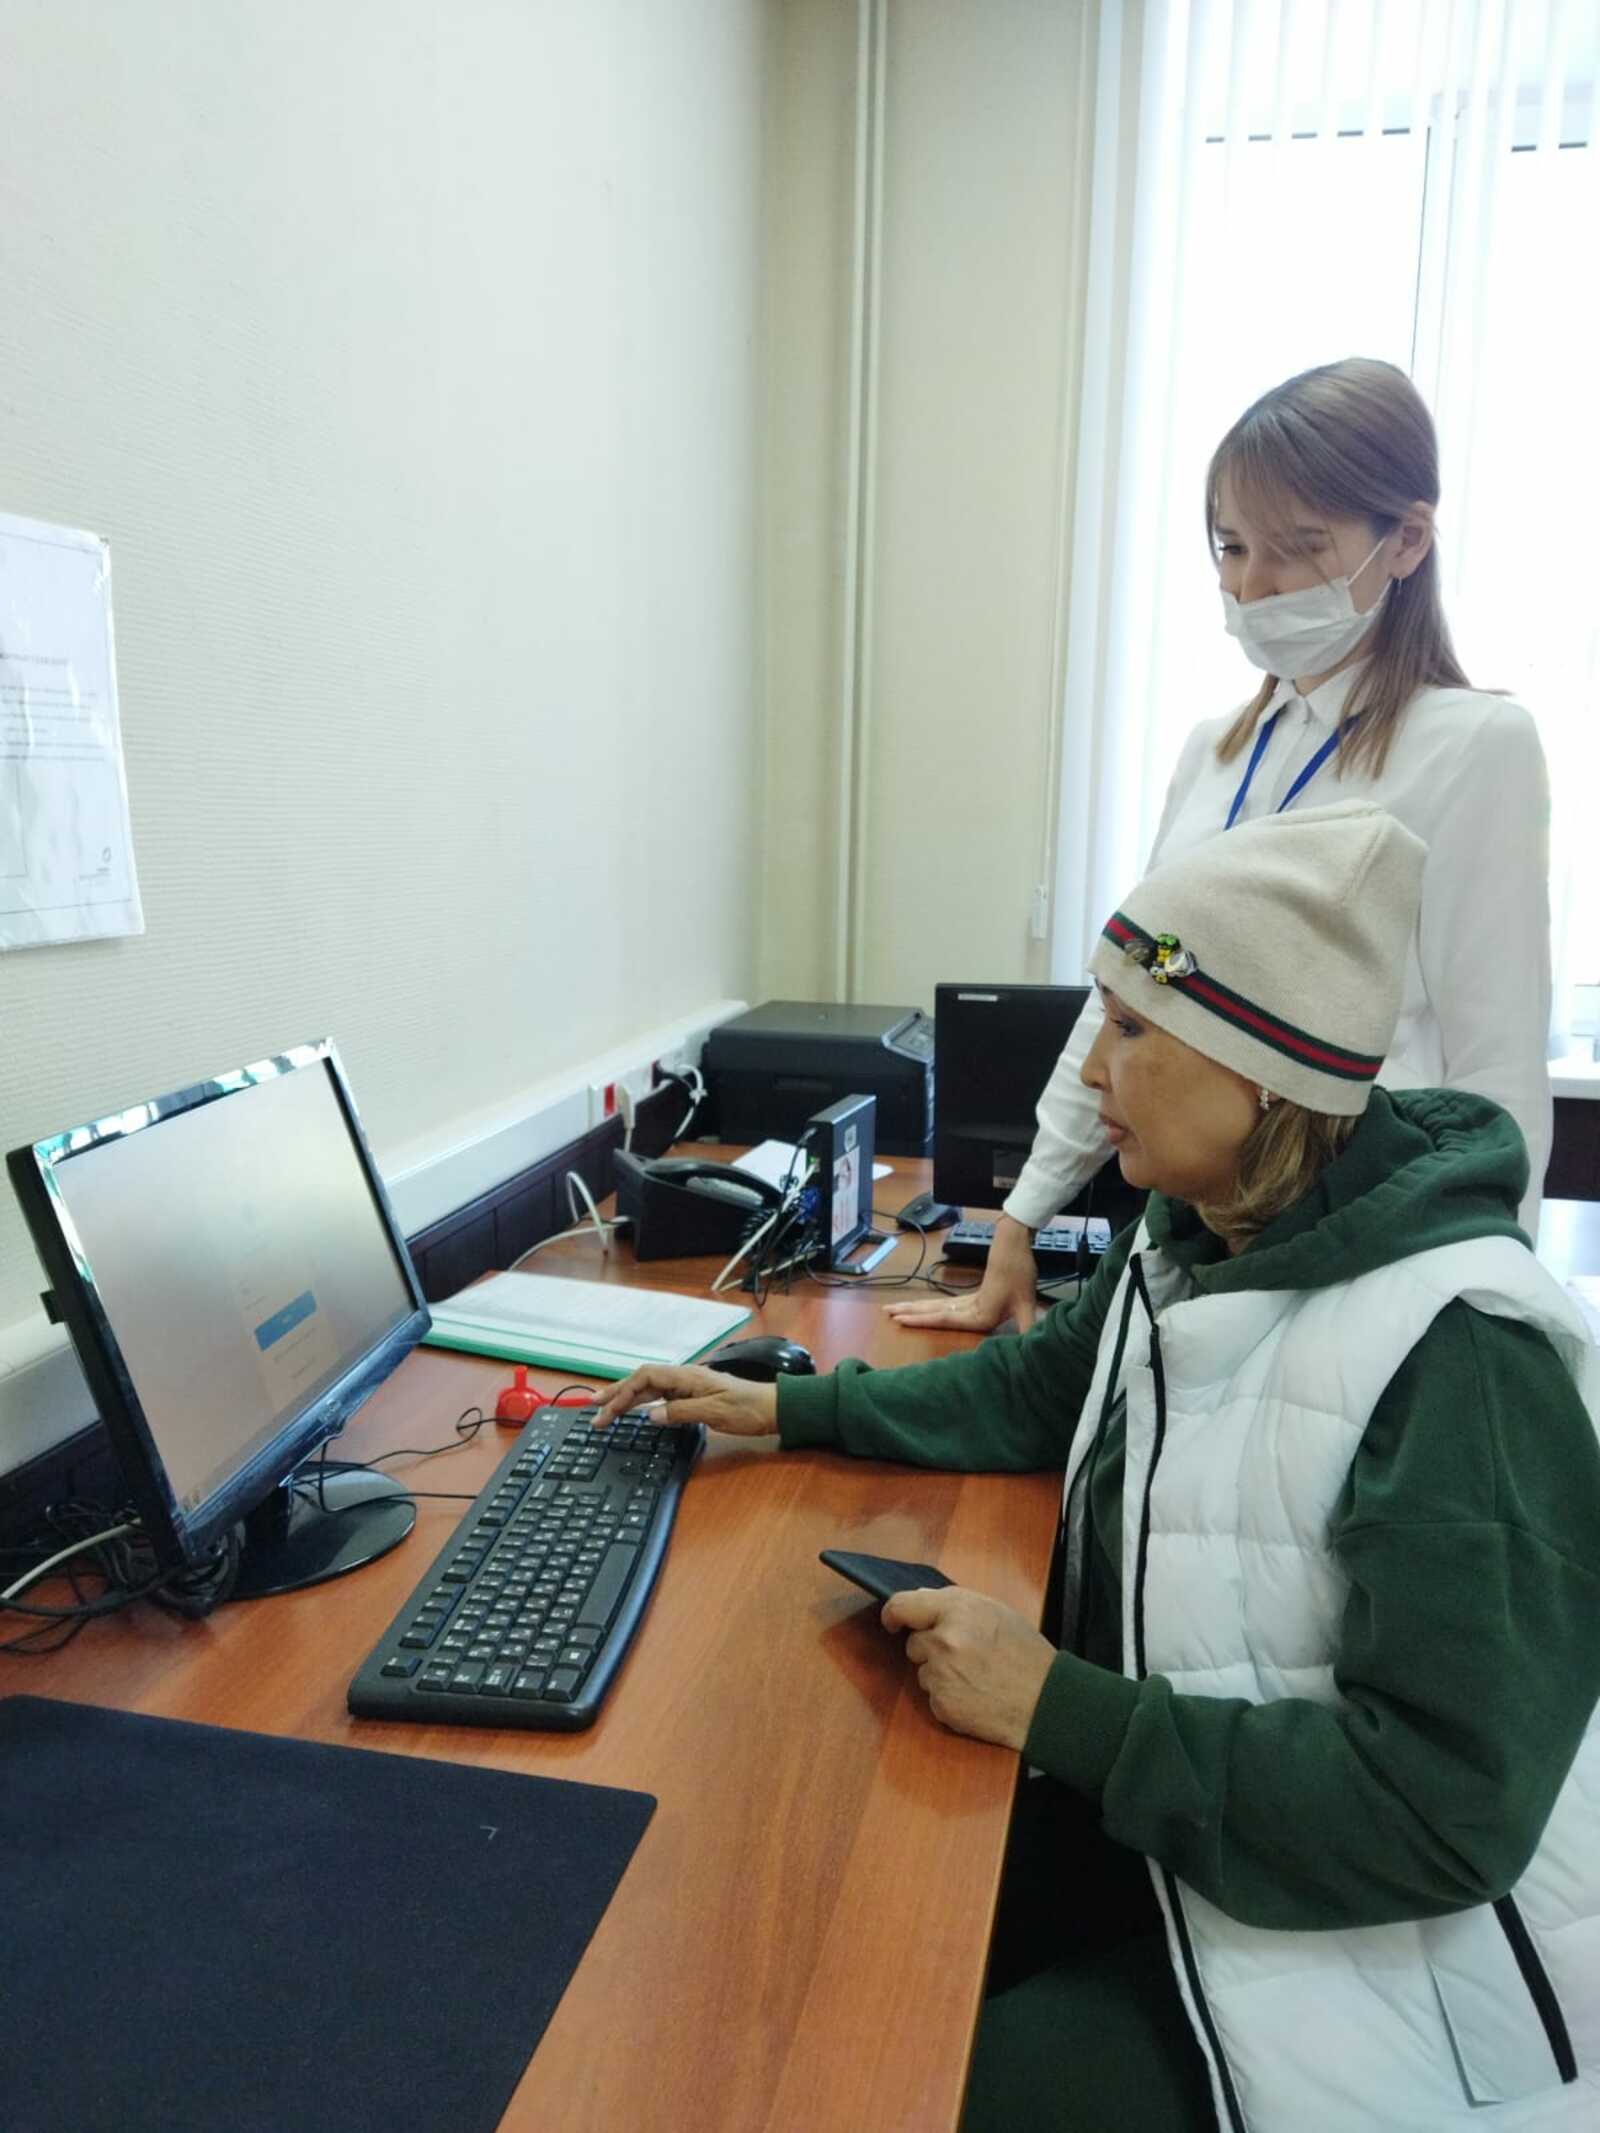 В МФЦ города Сибай запустили сектор пользовательского сопровождения для получения госуслуг в электронном виде